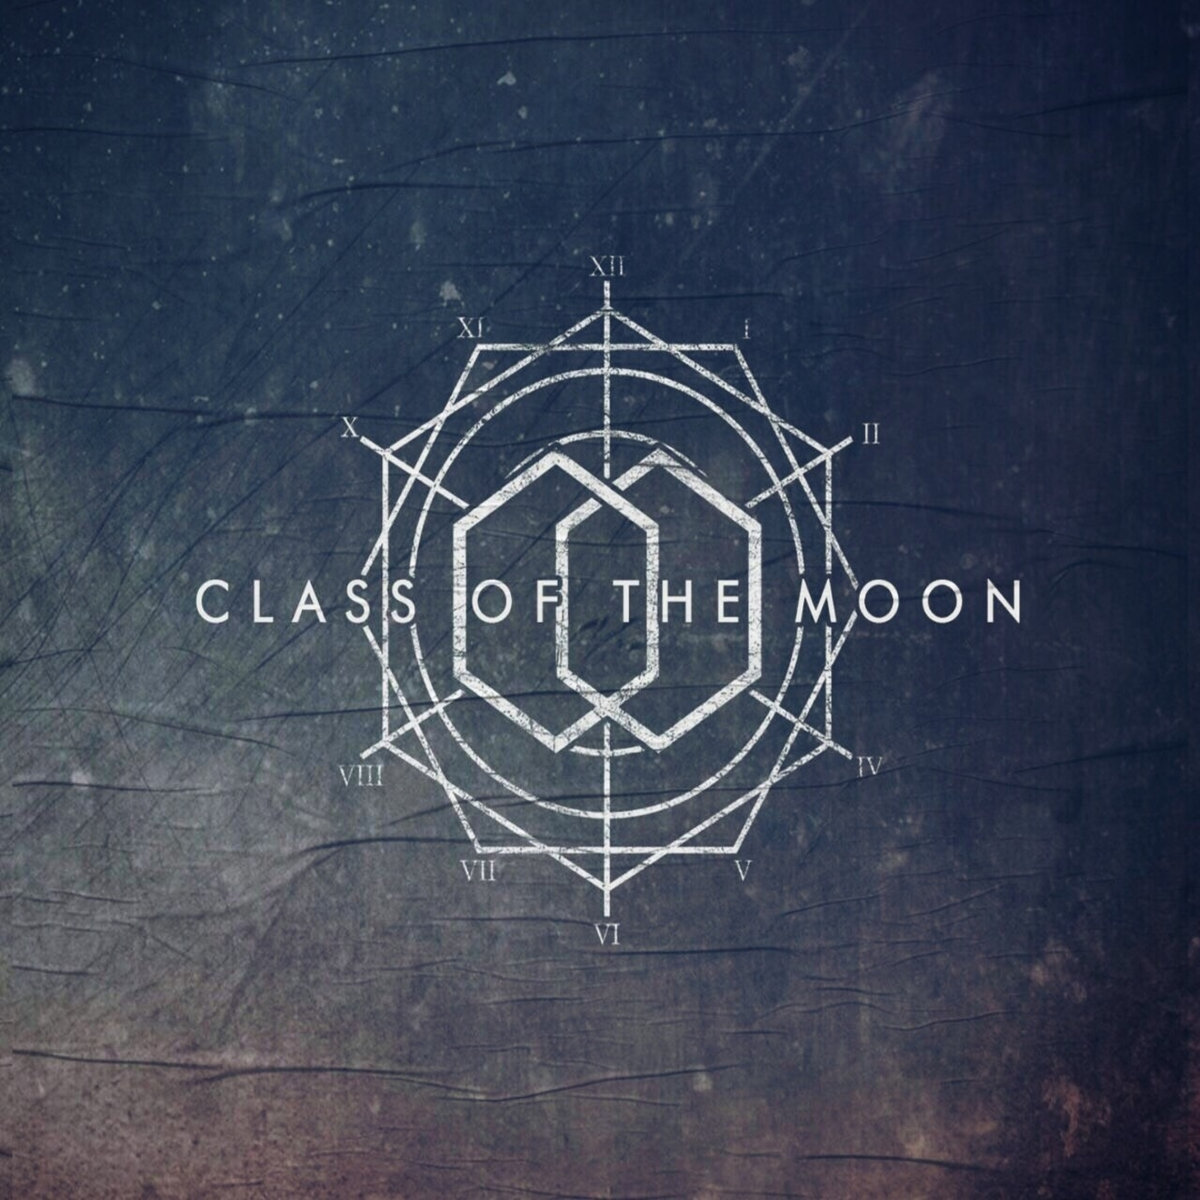 Download Class of the Moon - Tanpa Memudar Feat Mustika Kamal